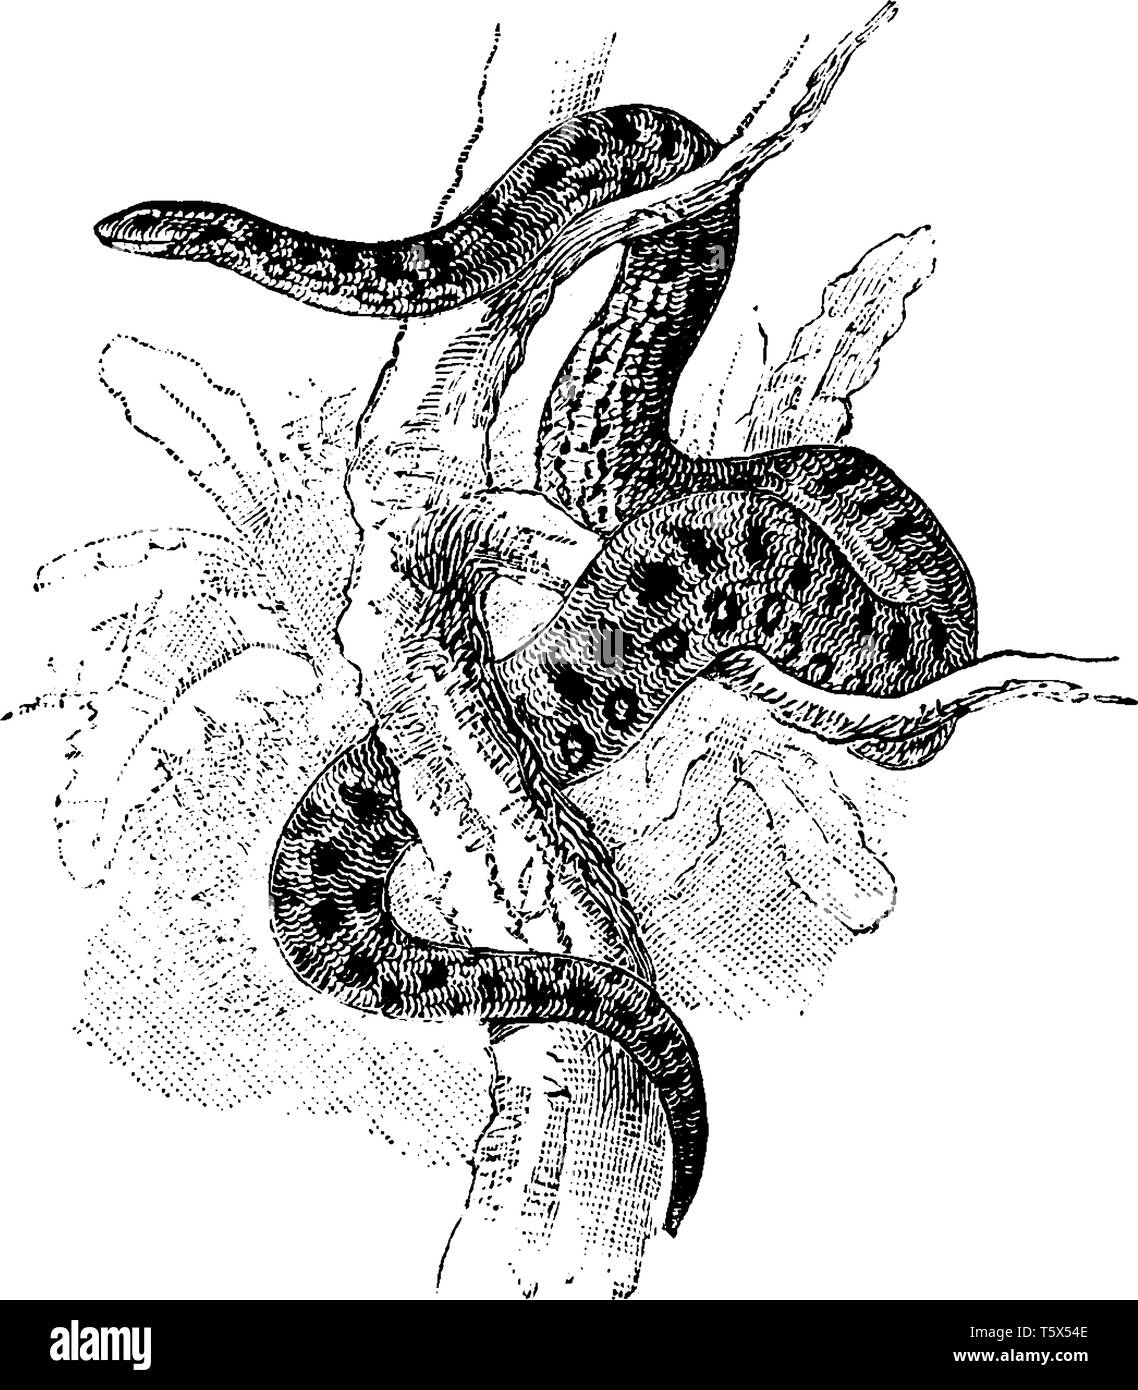 Anaconda Drawing